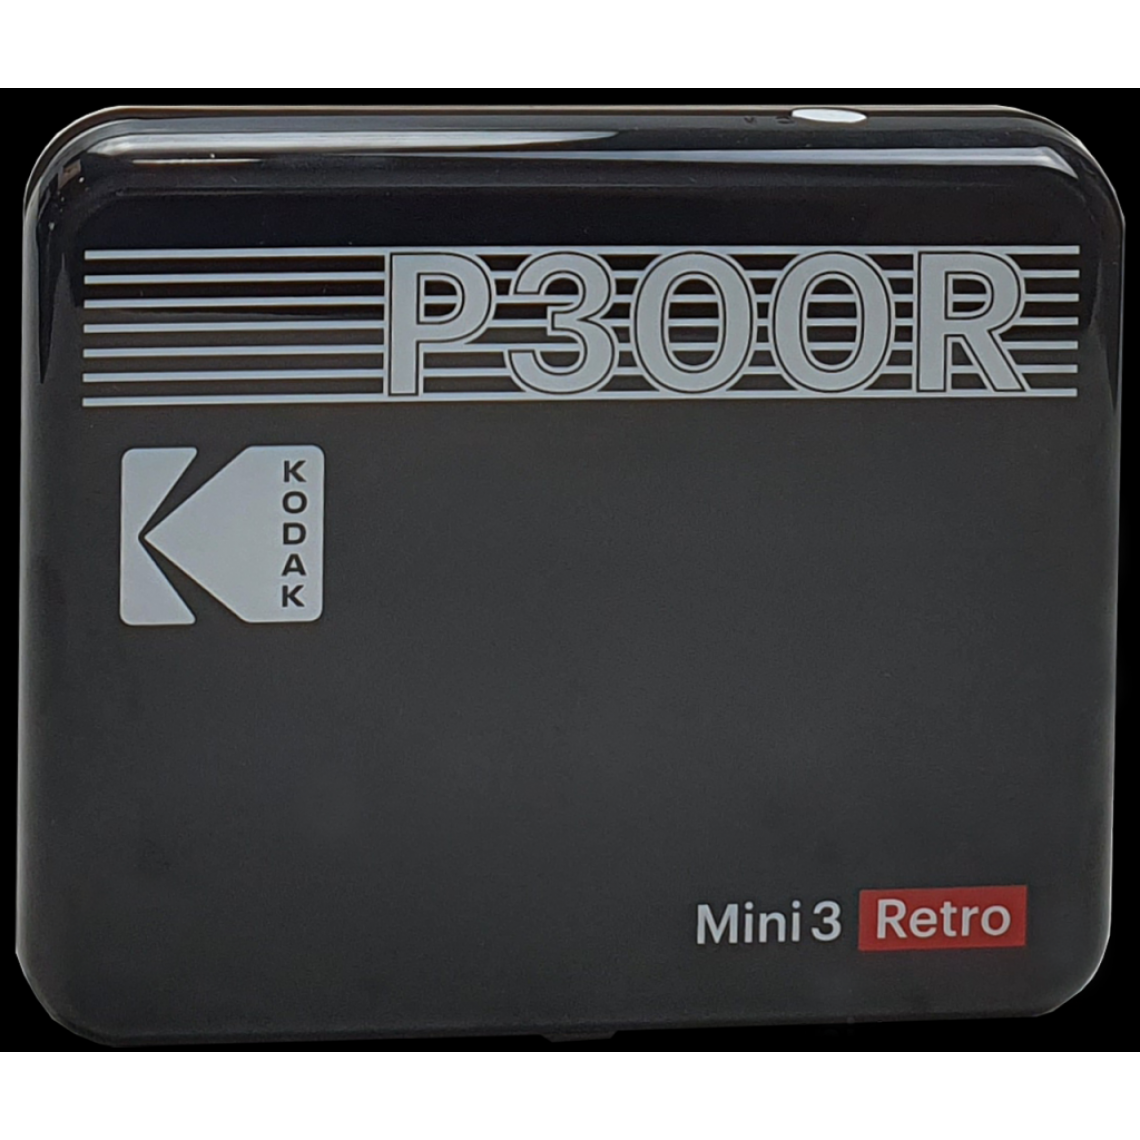 Kodak - KODAK Mini Retro 2 P300 - Mini Imprimante Connectée (Photo format Carré 7,6 x 7,6 cm - 3 x 3'', Bluetooth, Batterie Lithium, Sublimation Thermique 4Pass, 8 photos incluses) Noir-Noir-3 x3 '' - Imprimantes d'étiquettes